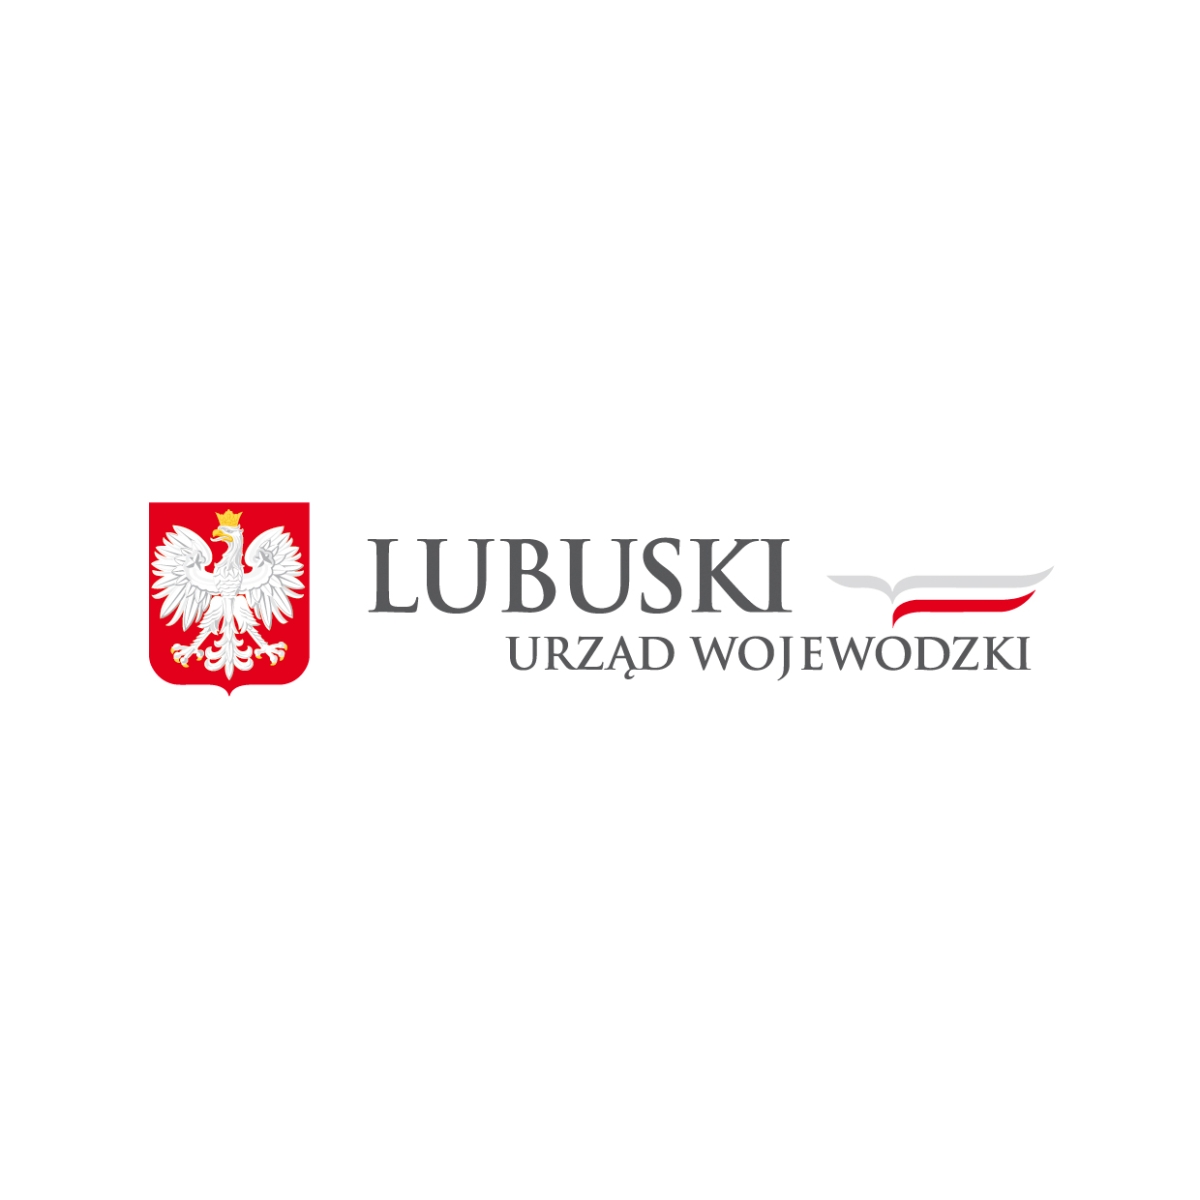 Rozporządzenie Wojewody Lubuskiego z dn. 7 września 2022 r. zmieniające rozporządzenie w sprawie odstrzału sanitarnego dzików na terenie województwa lubuskiego